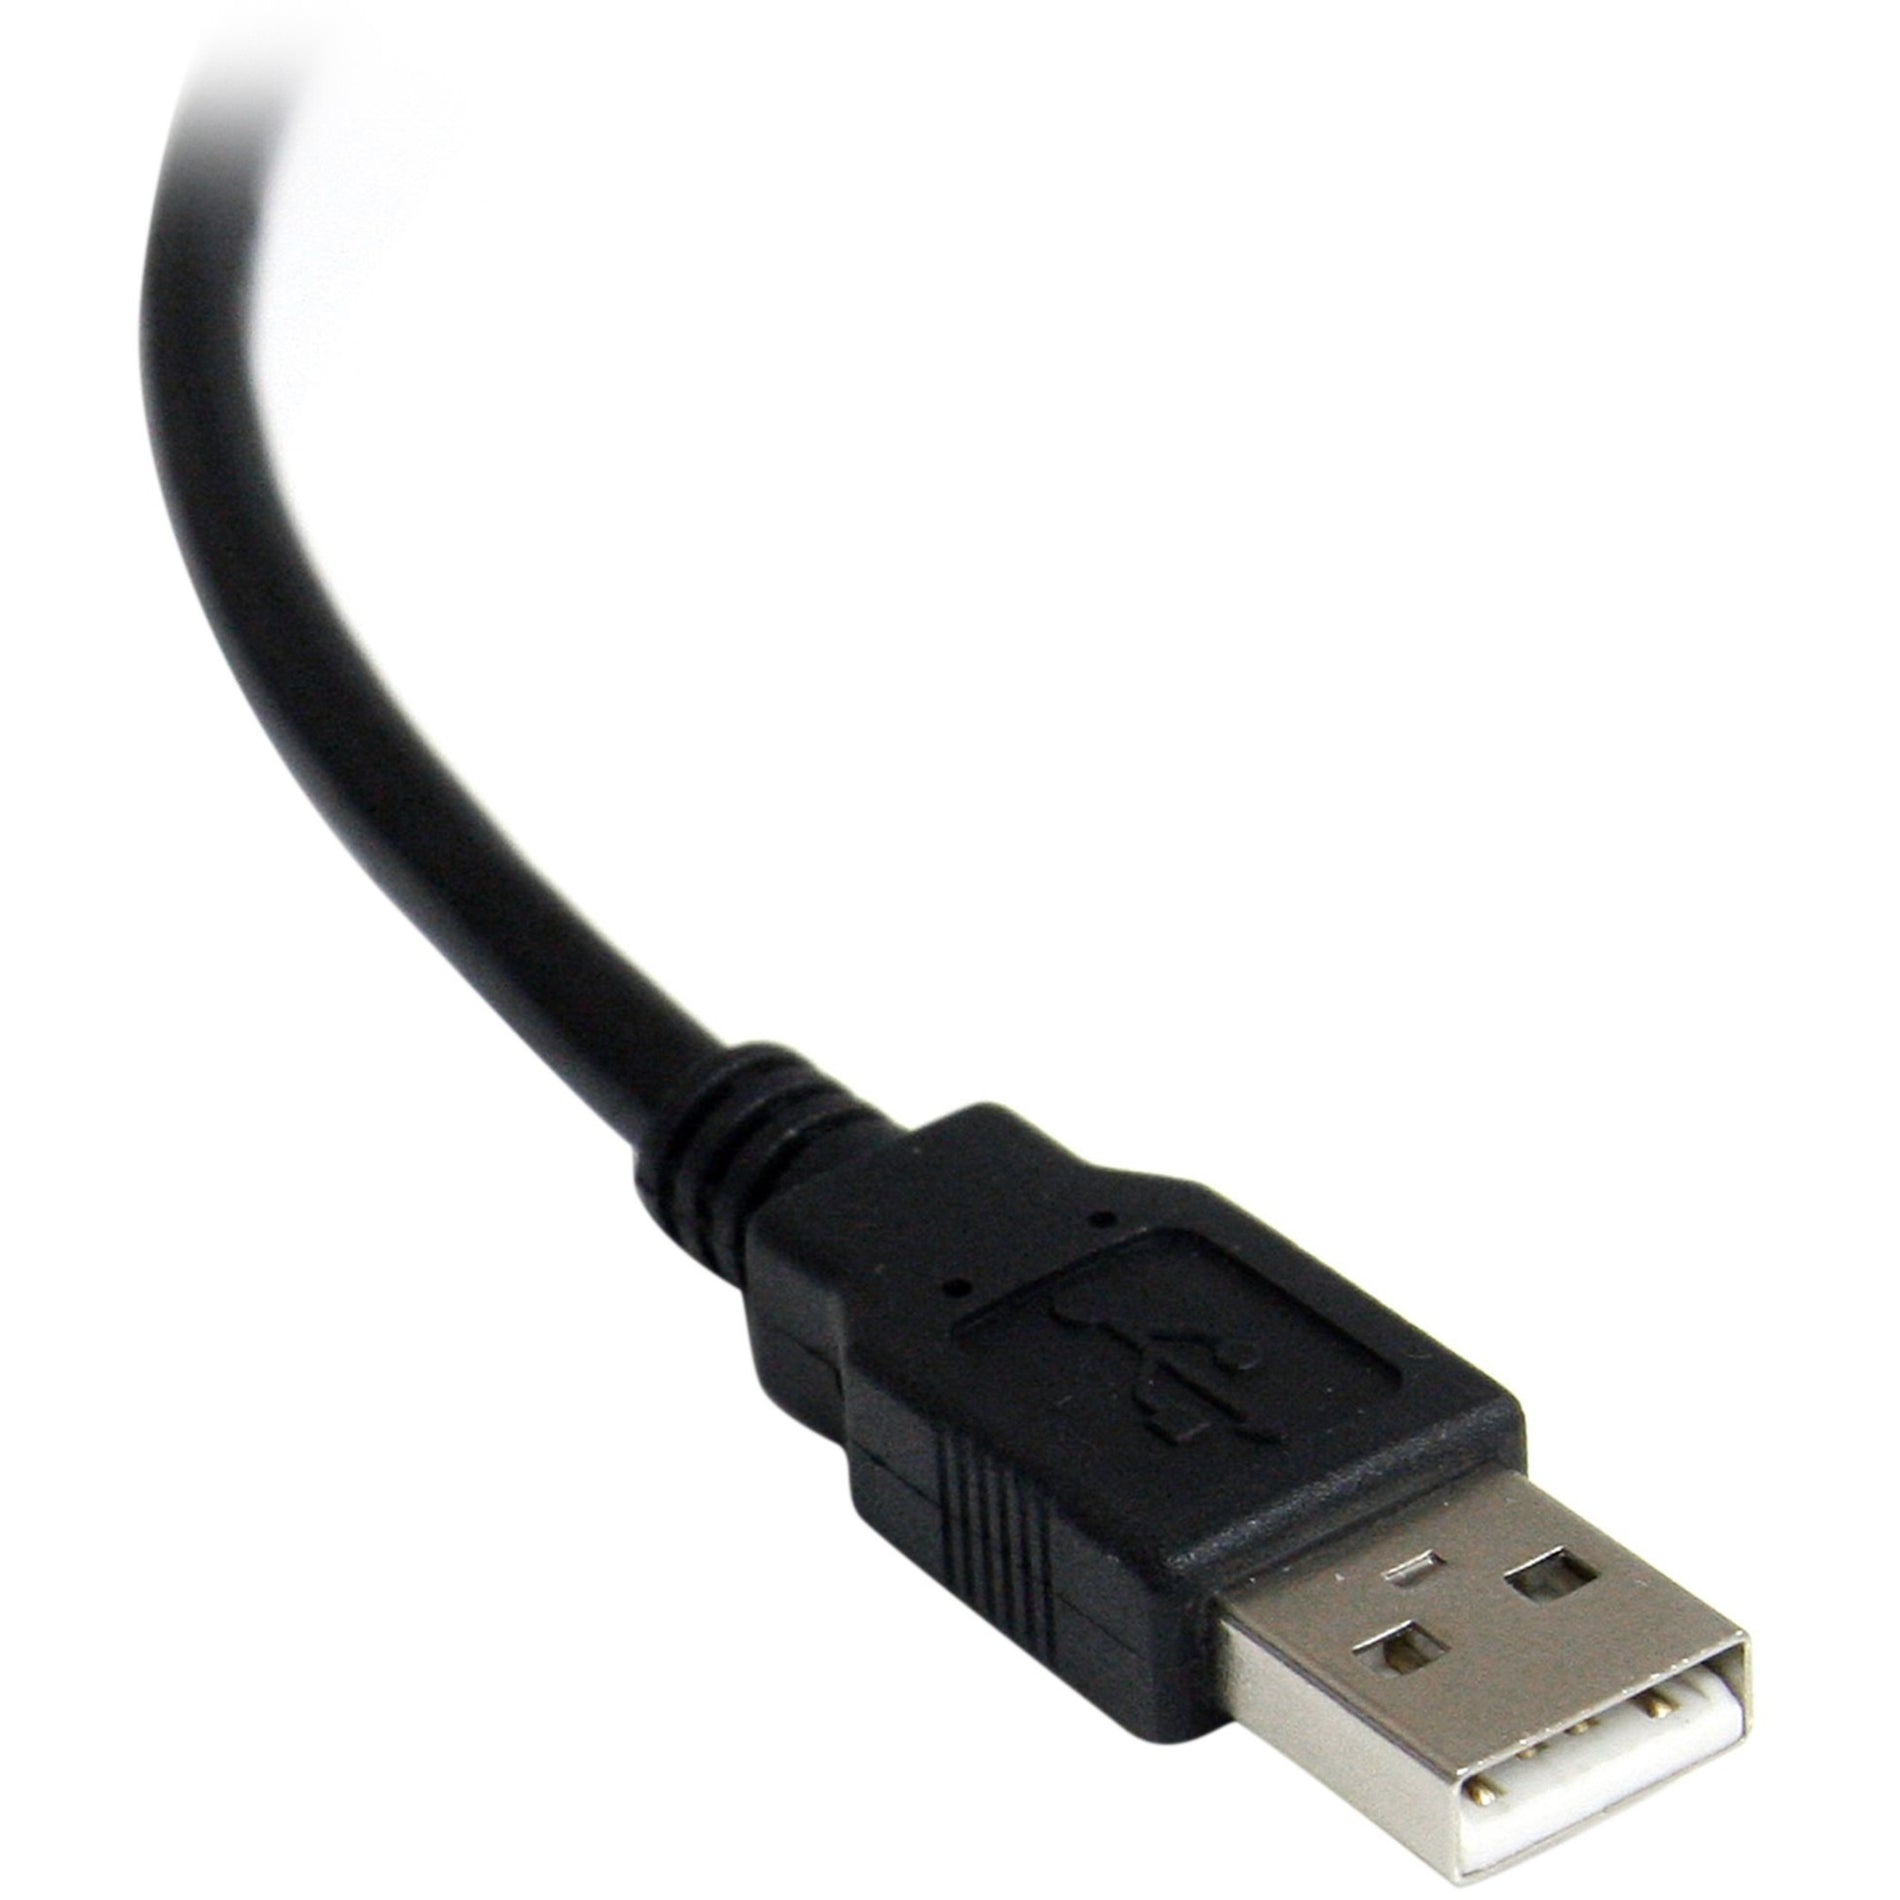 品牌：StarTech.com 产品名称：StarTech.com ICUSB2321FIS 1 端口 FTDI USB 转串行 RS232 适配器电缆，带隔离，防雷保护，电缆长度 8.20 英尺，黑色